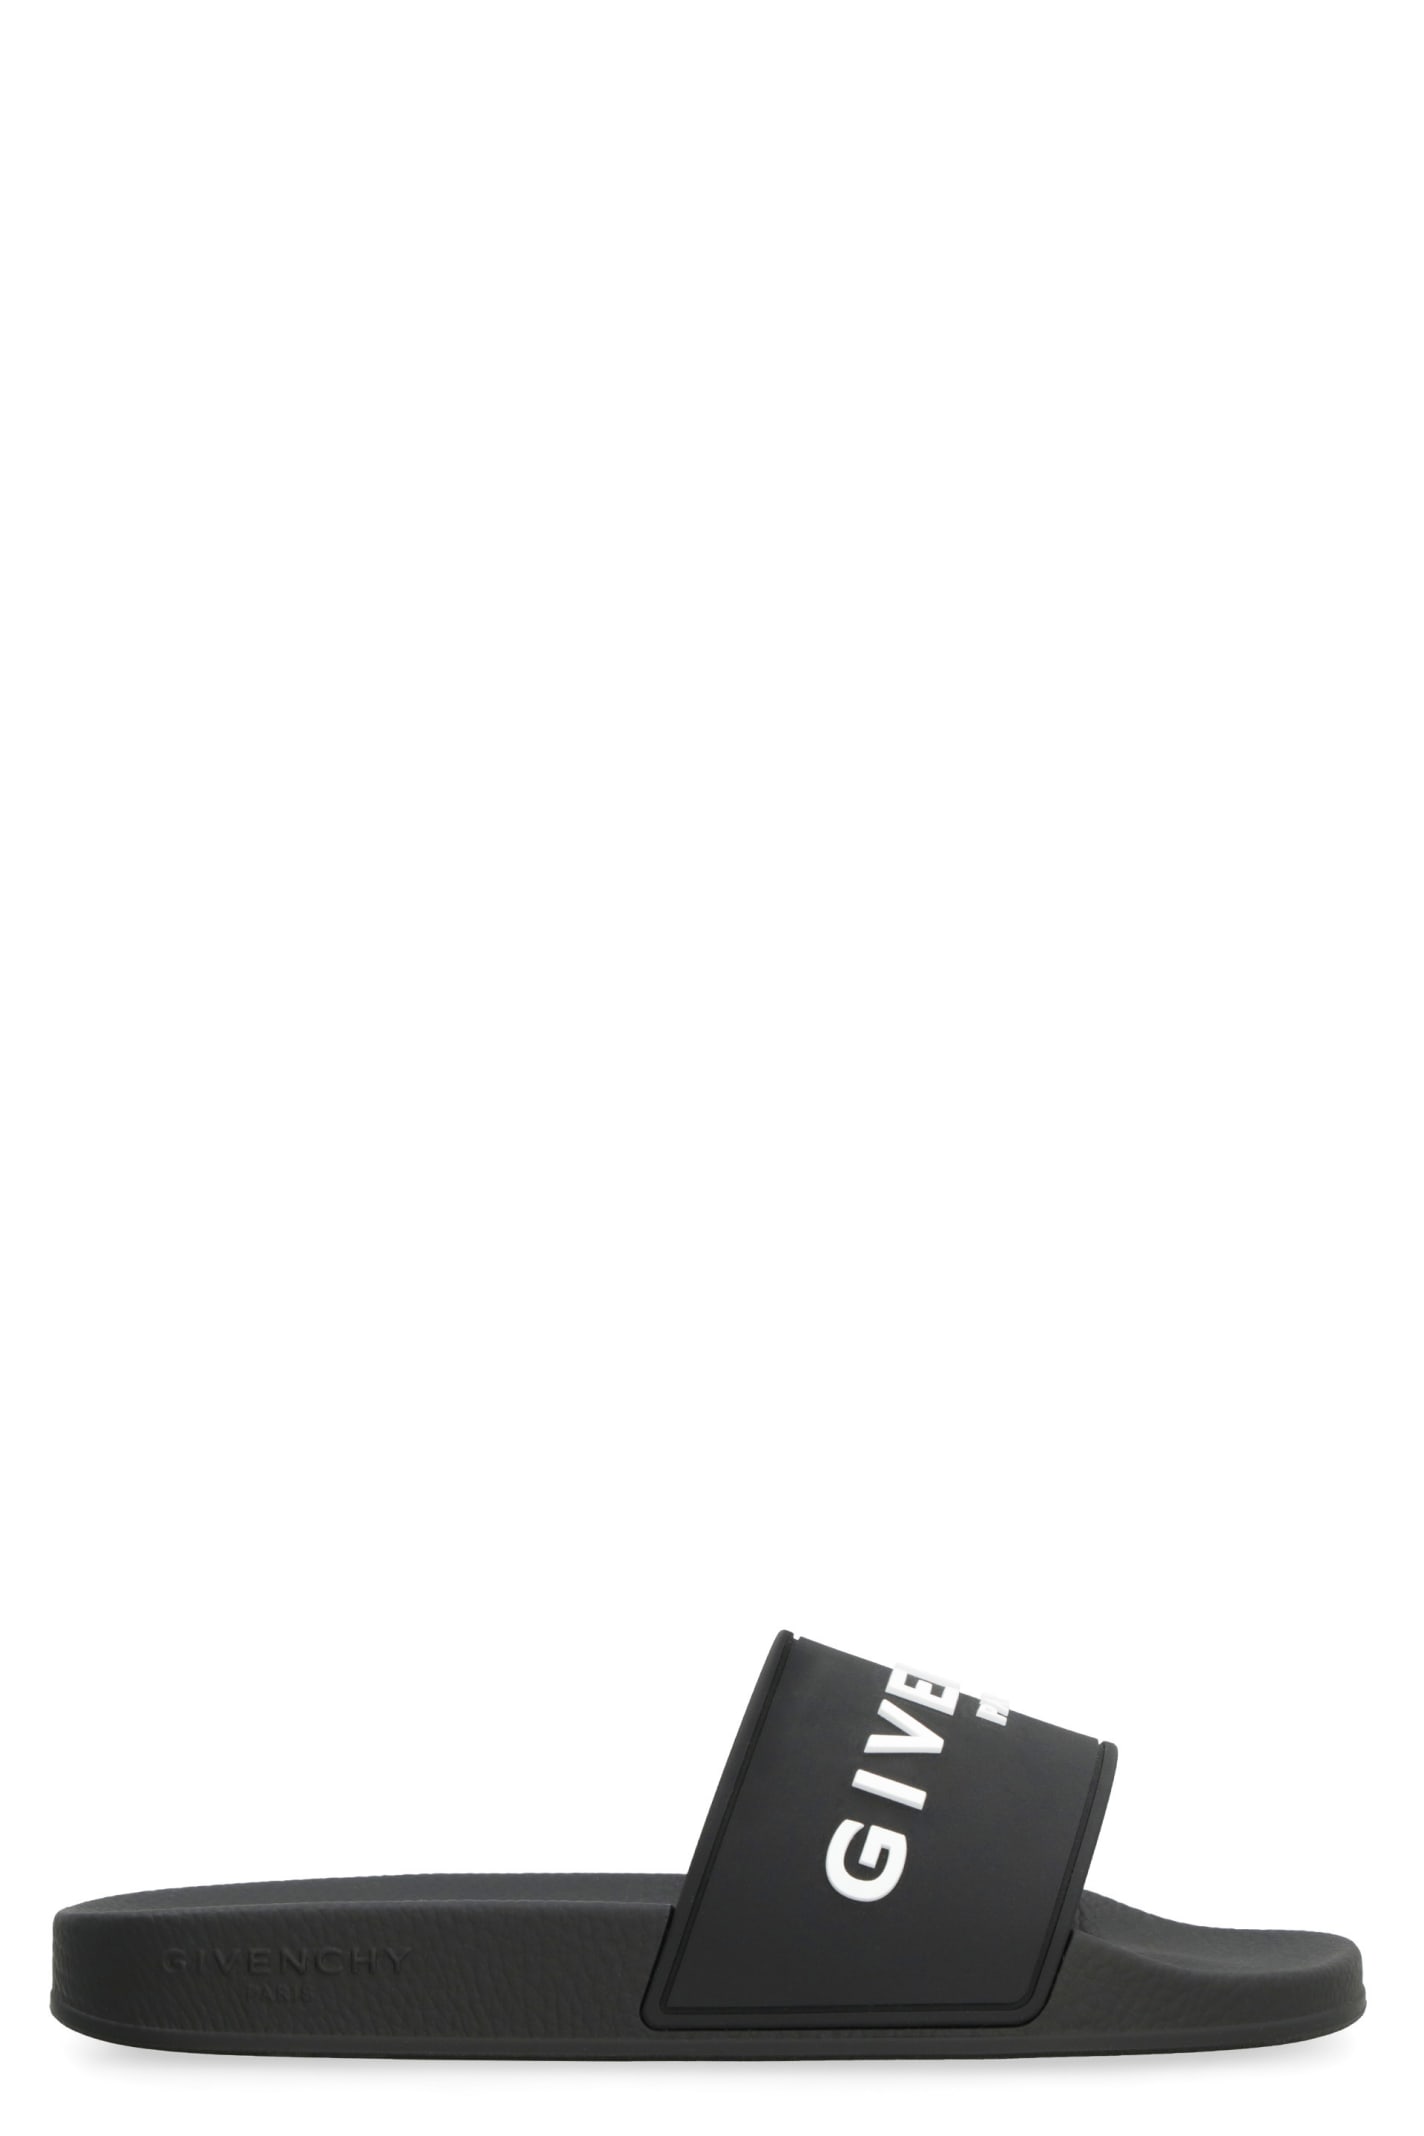 Givenchy Logo Detail Rubber Slides In Black